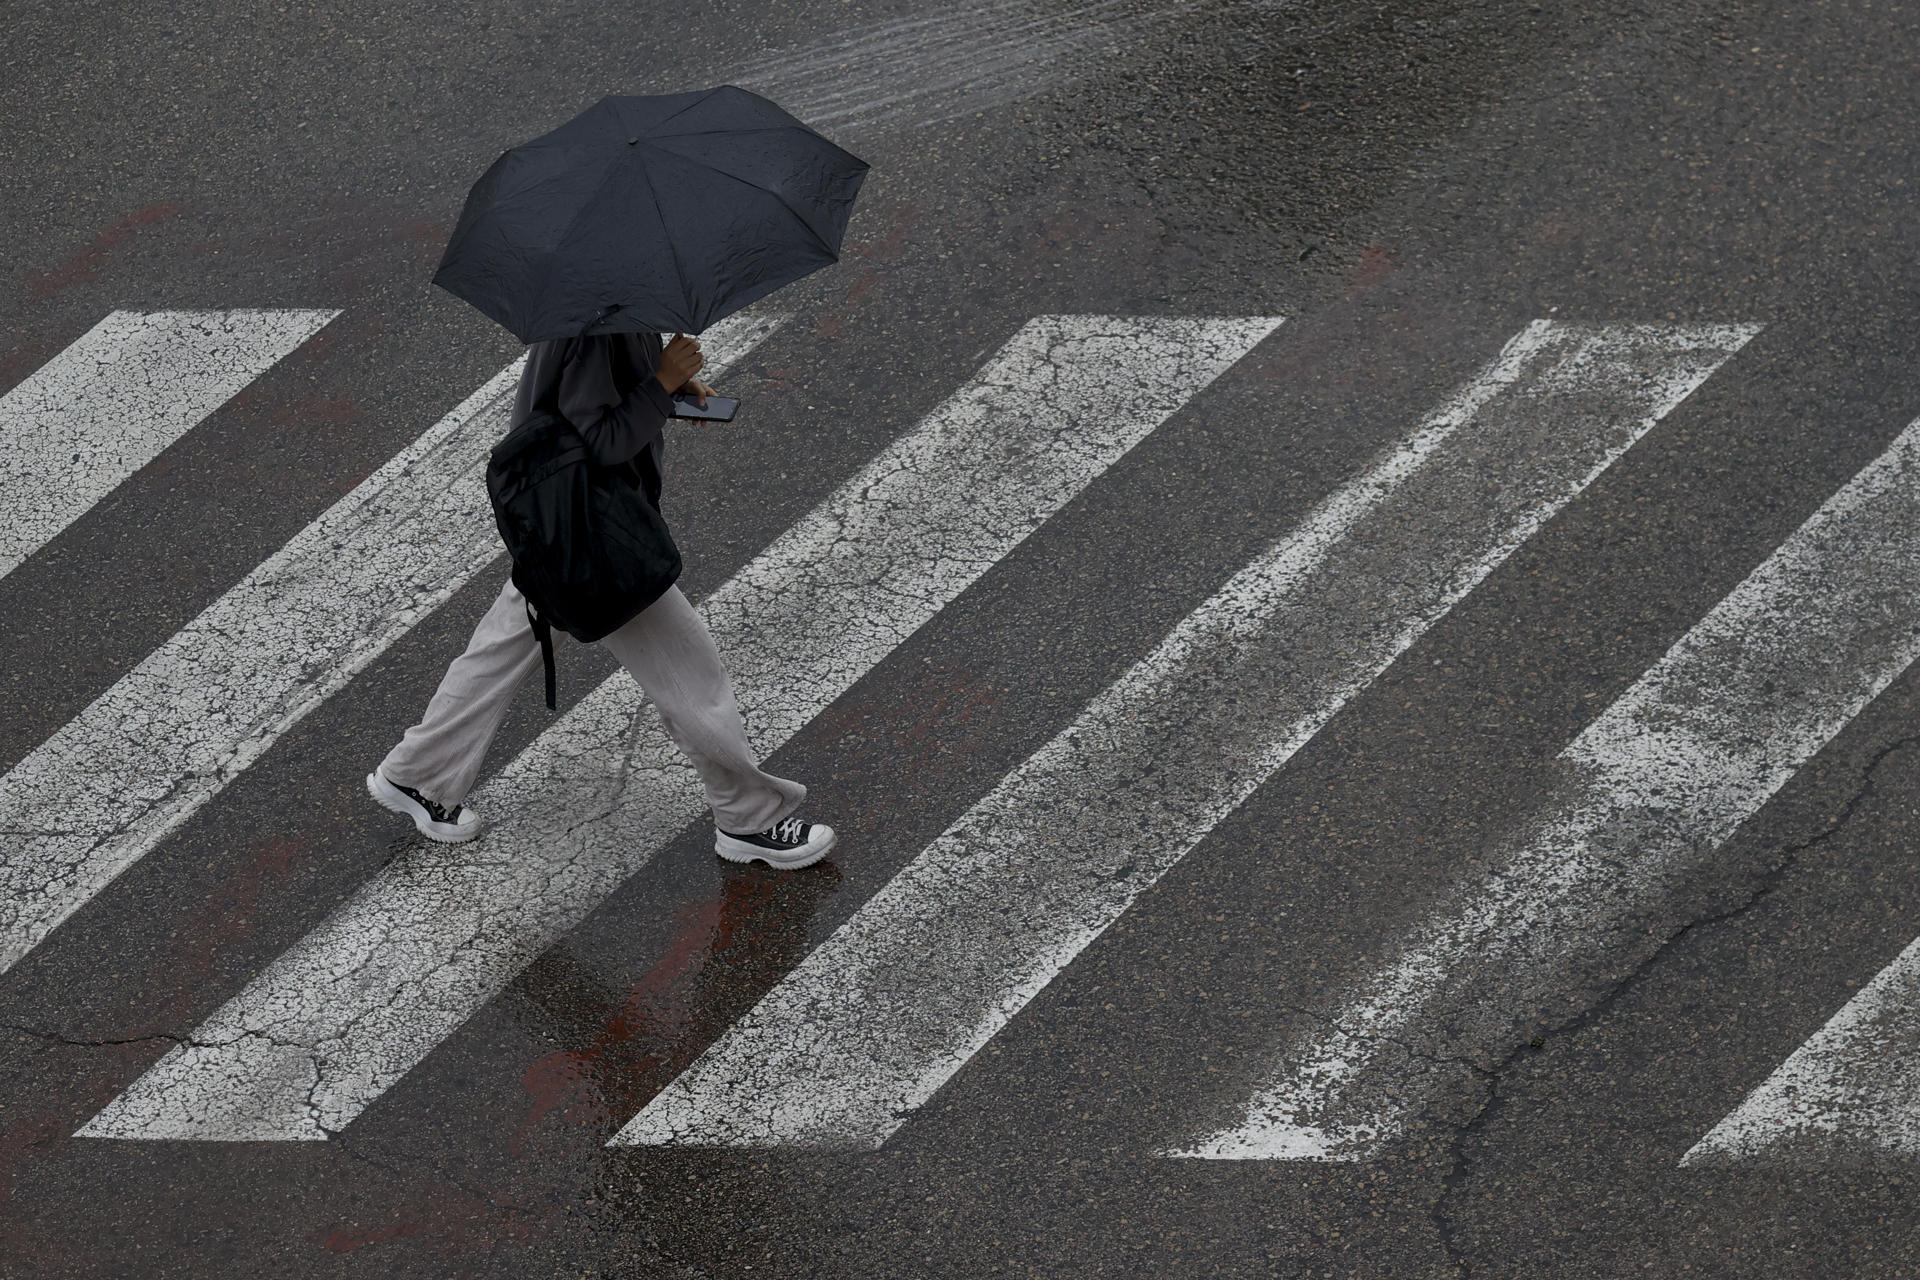 Un persona se protege de la lluvia con un paraguas en la ciudad de València. EFE/Kai Försterling/Archivo